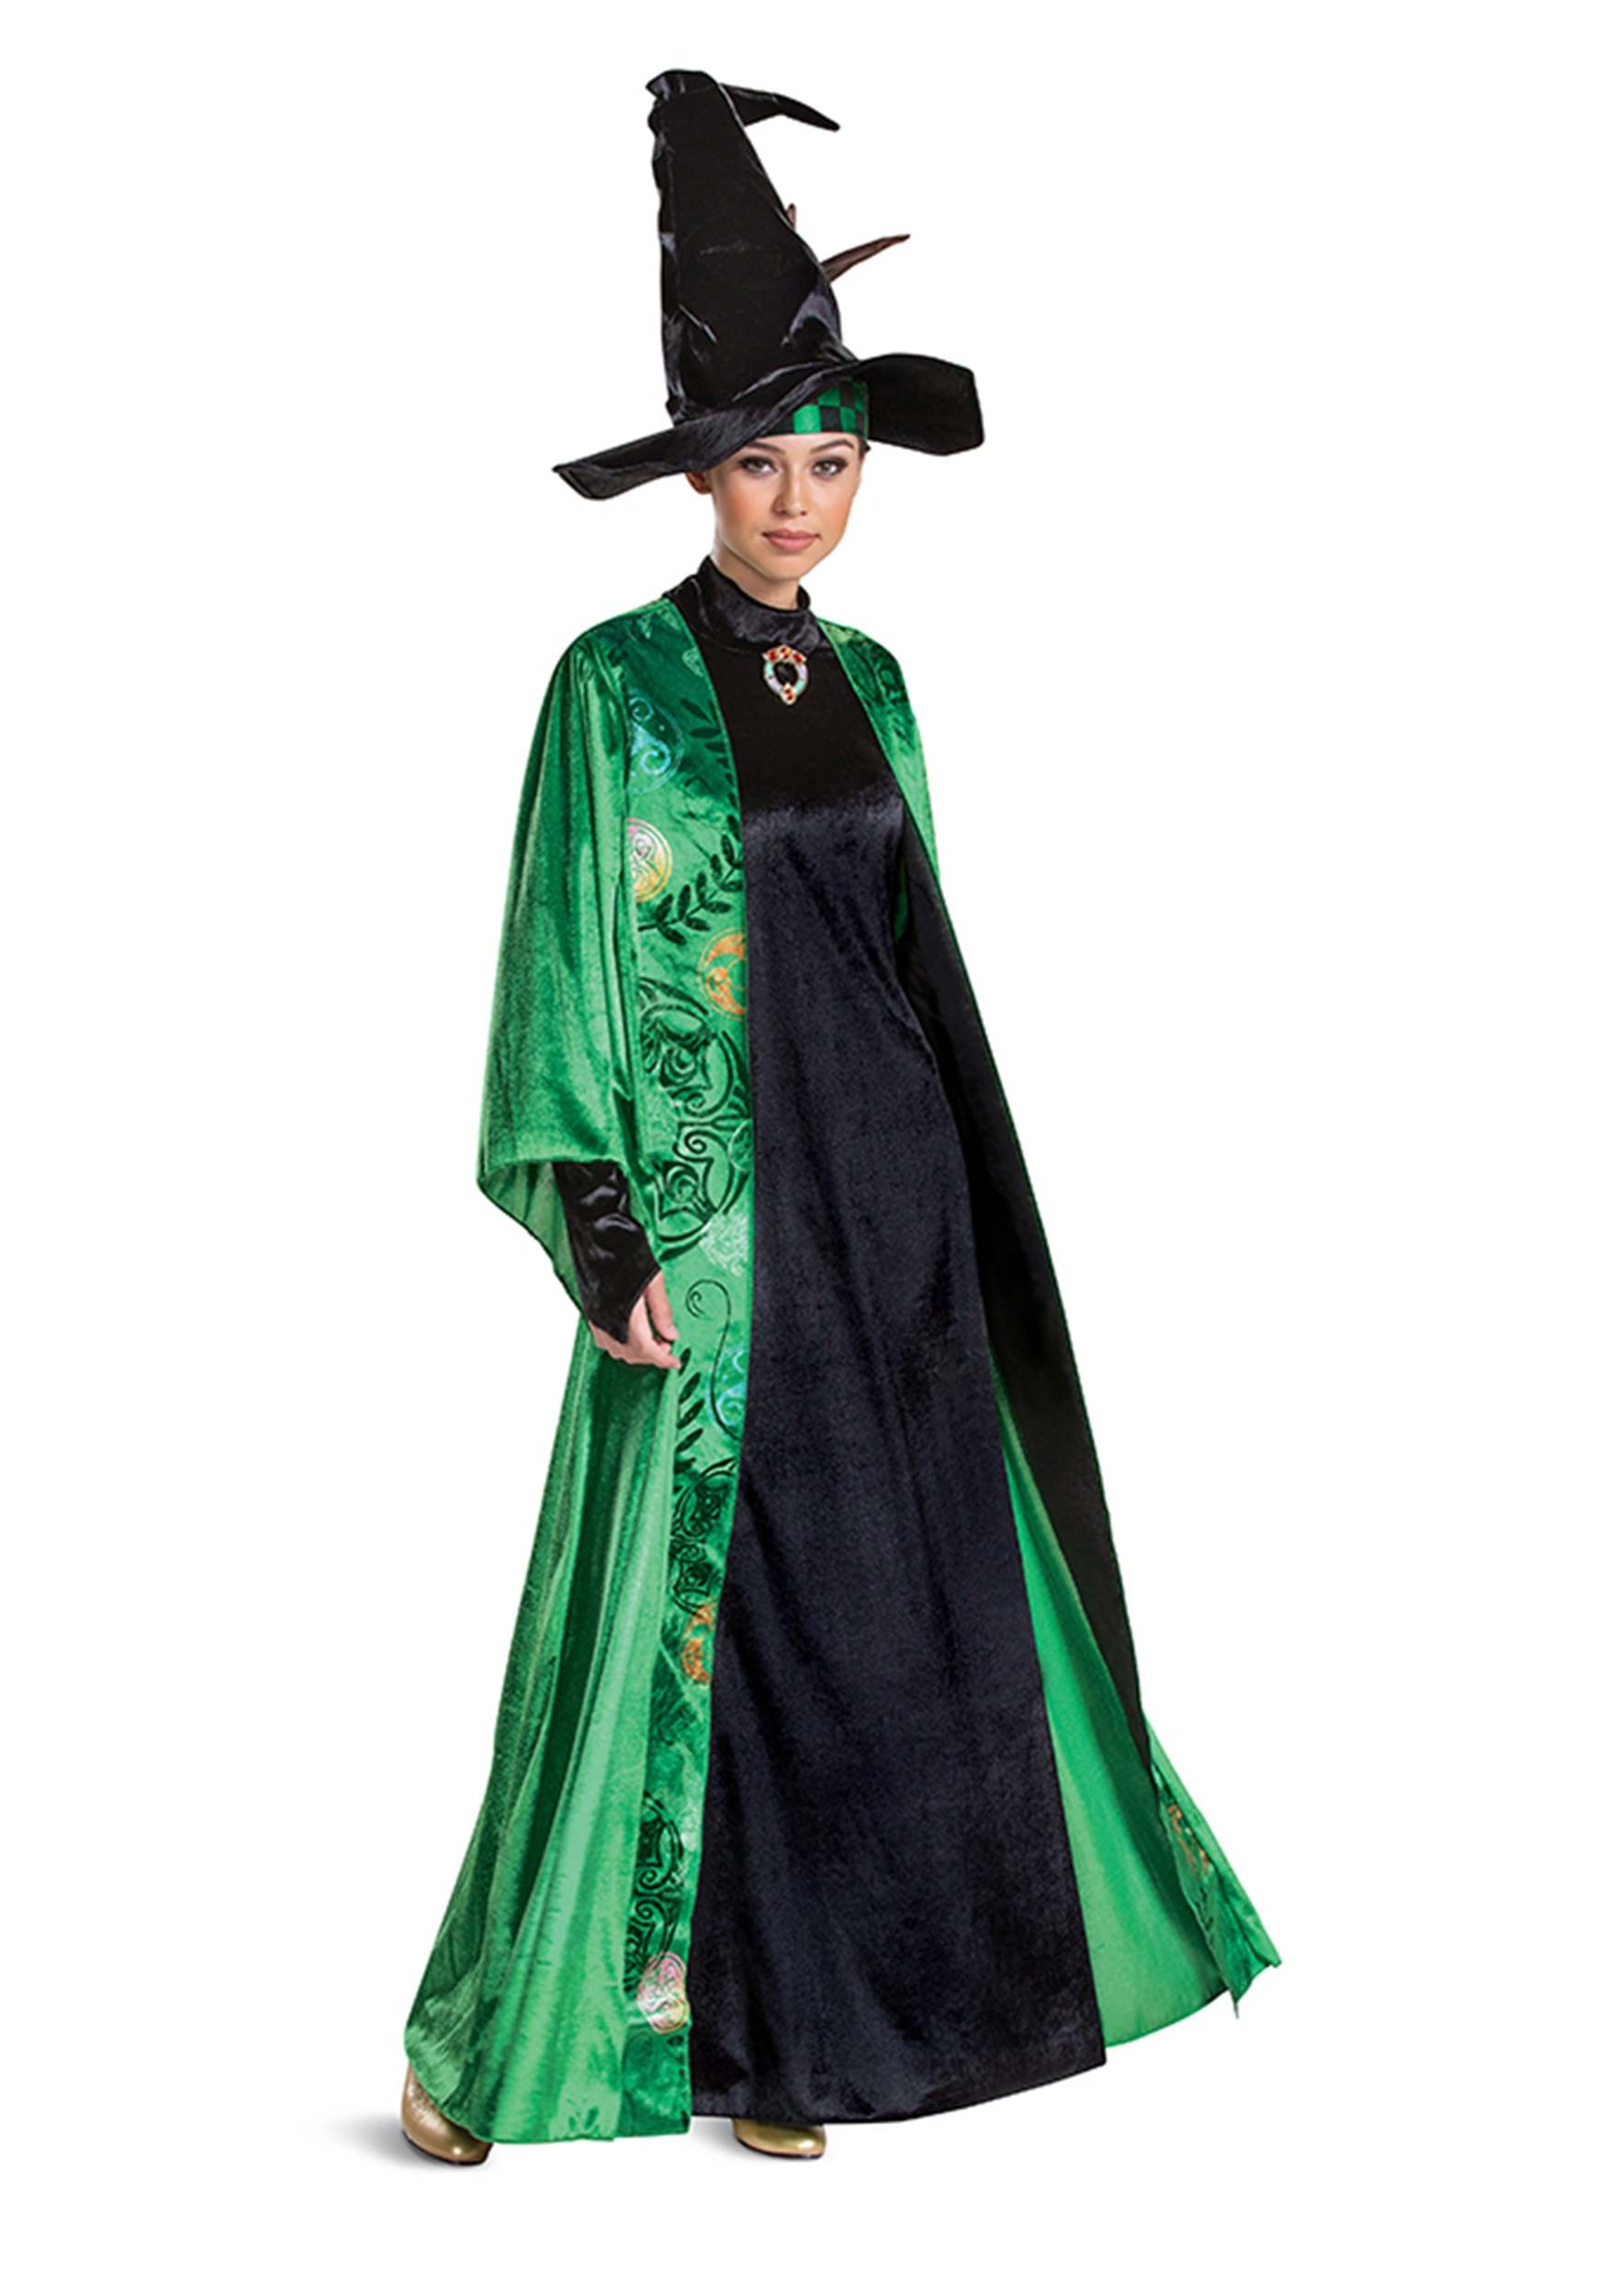 professor mcgonagall costumes adults